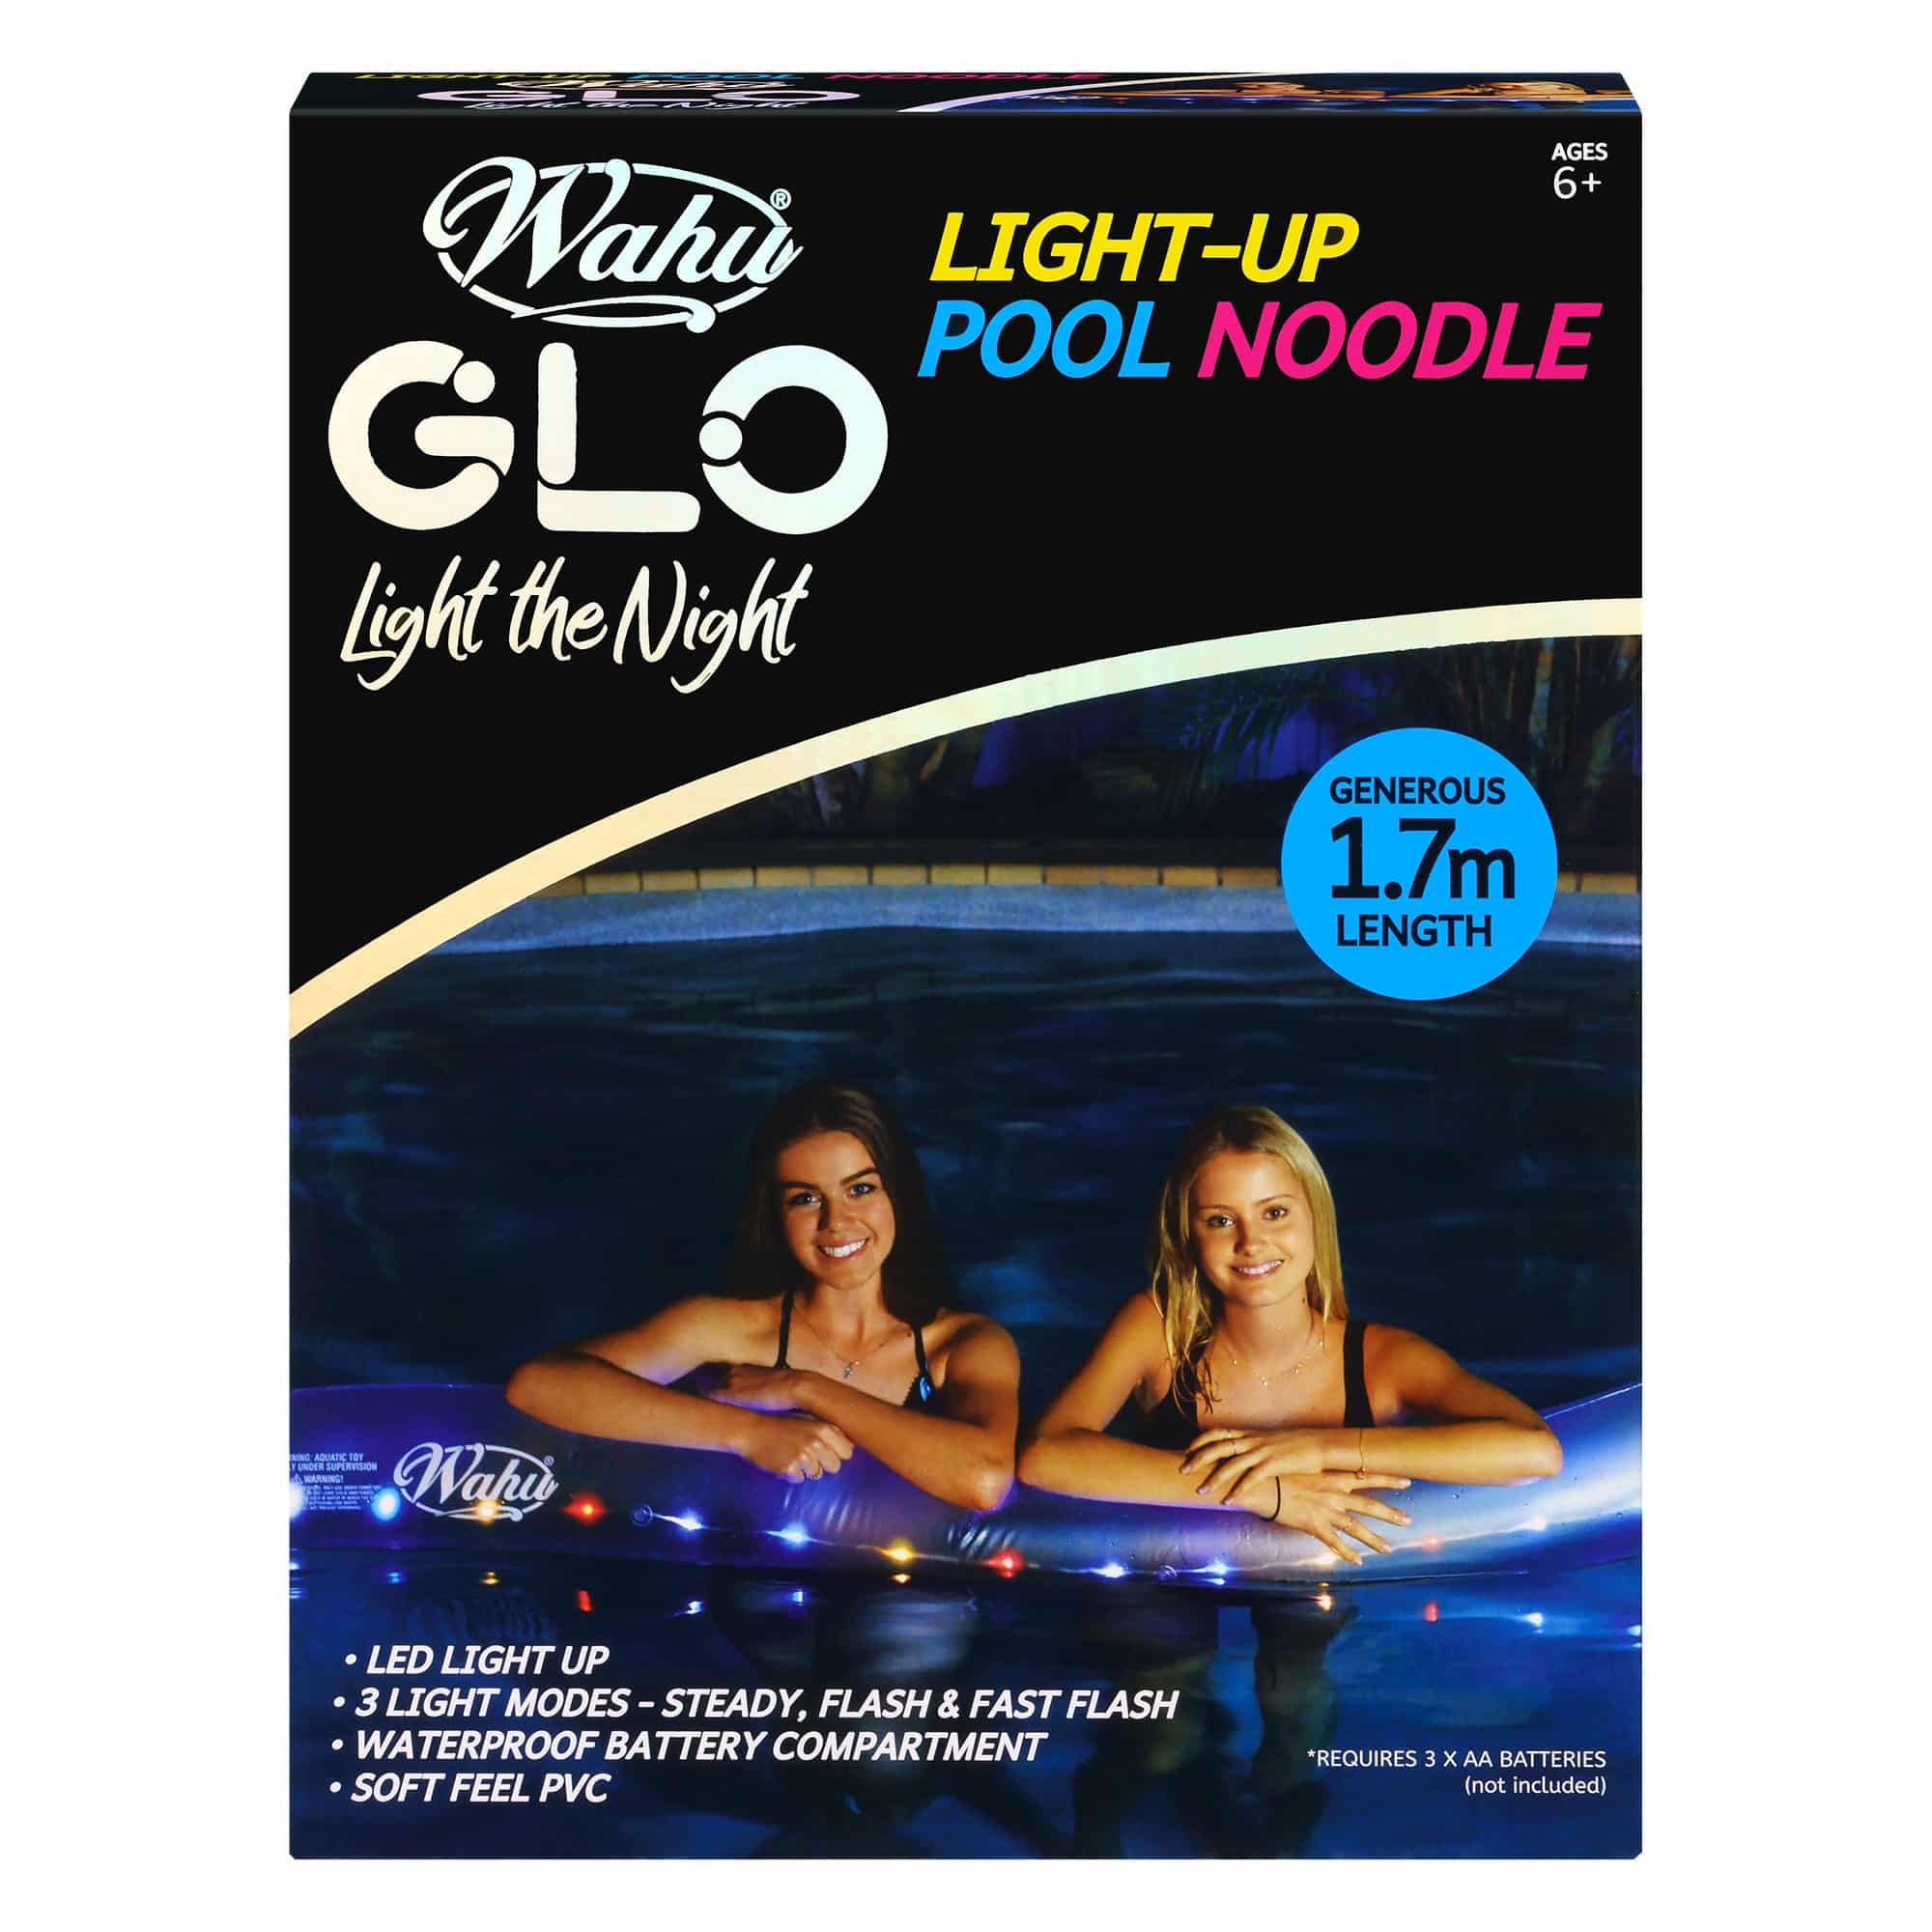 Wahu Glo - Light-Up Pool Noodle